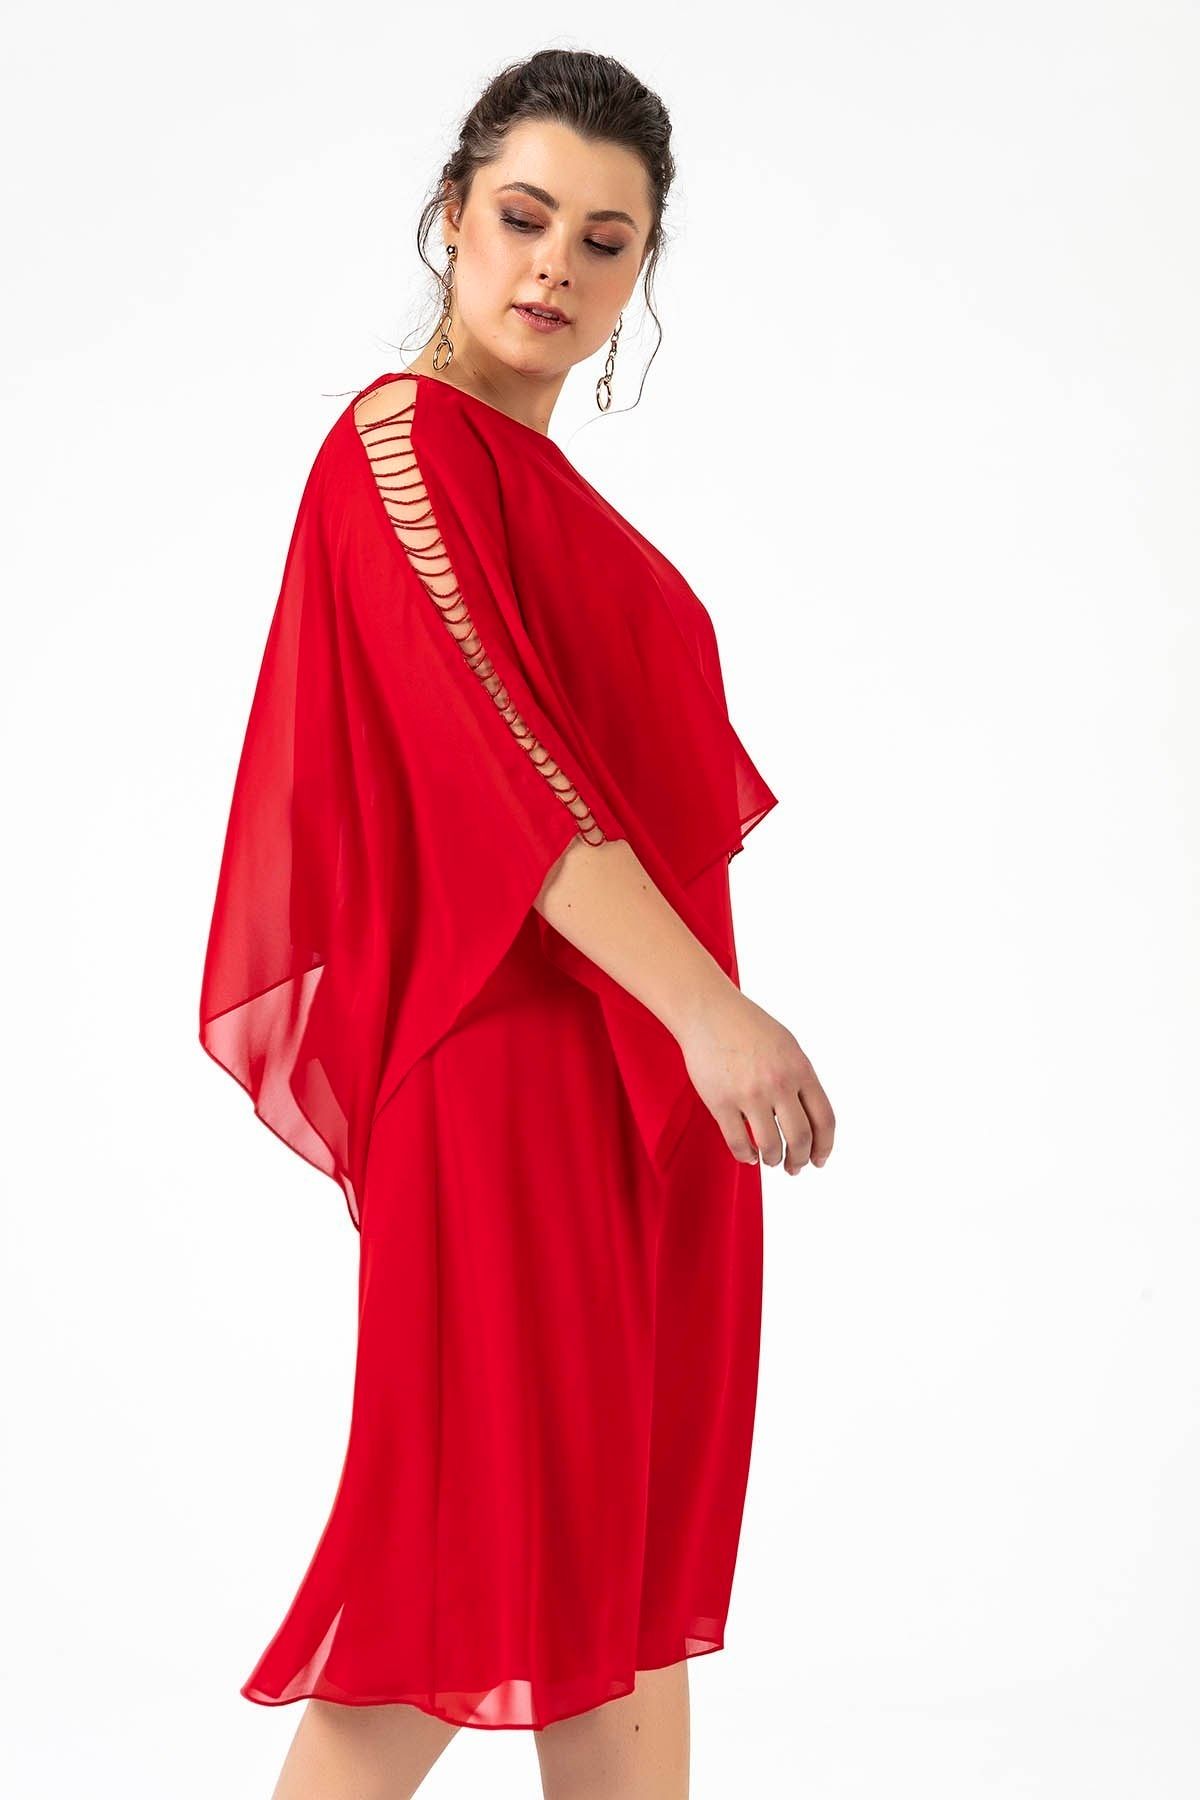 By Saygı Omuzları Boncuklu Üstü Şifon Büyük Beden Astarlı Elbise Kırmızı